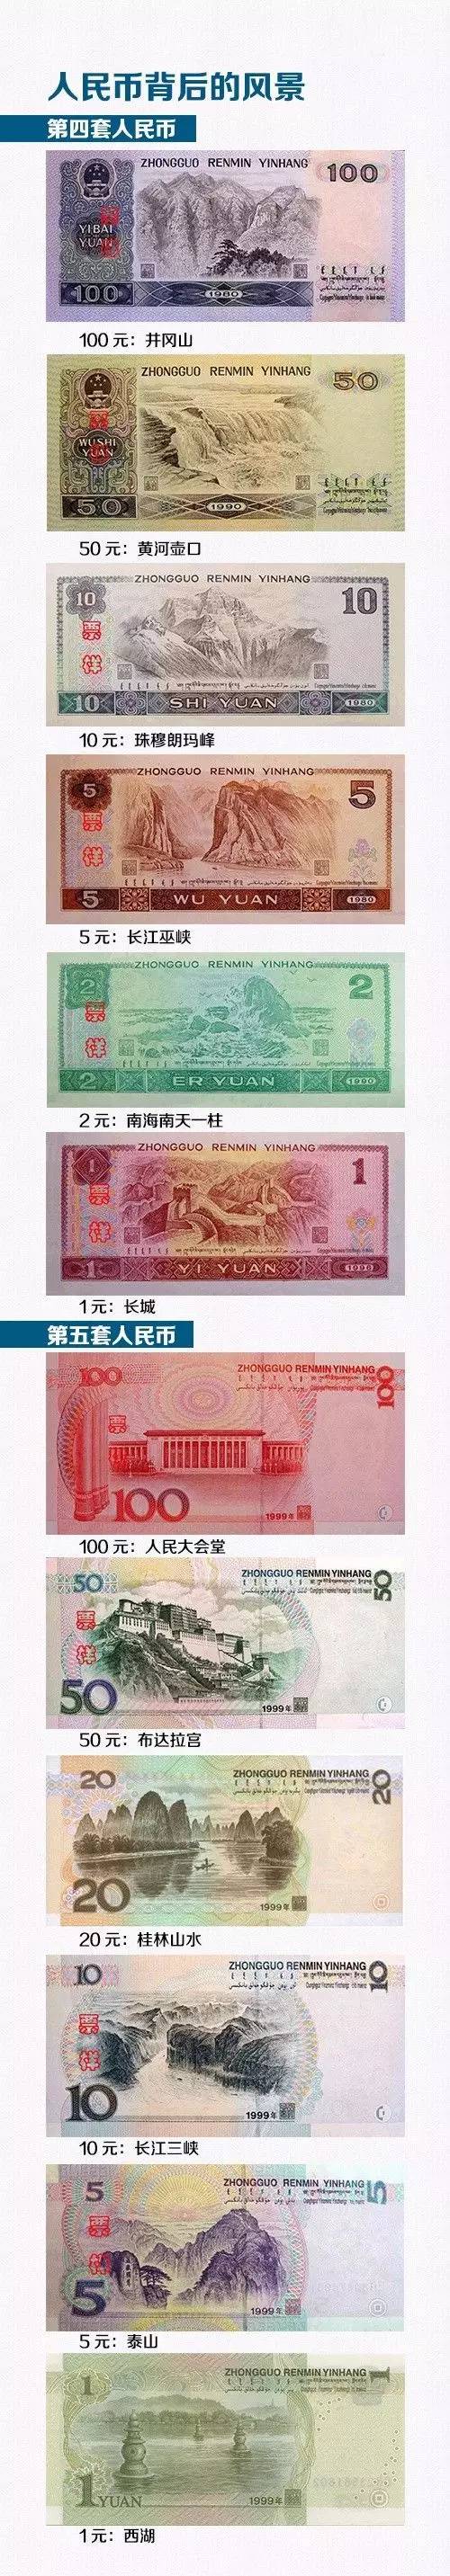 人民币的历史演变,人民币的历史演变过程图片